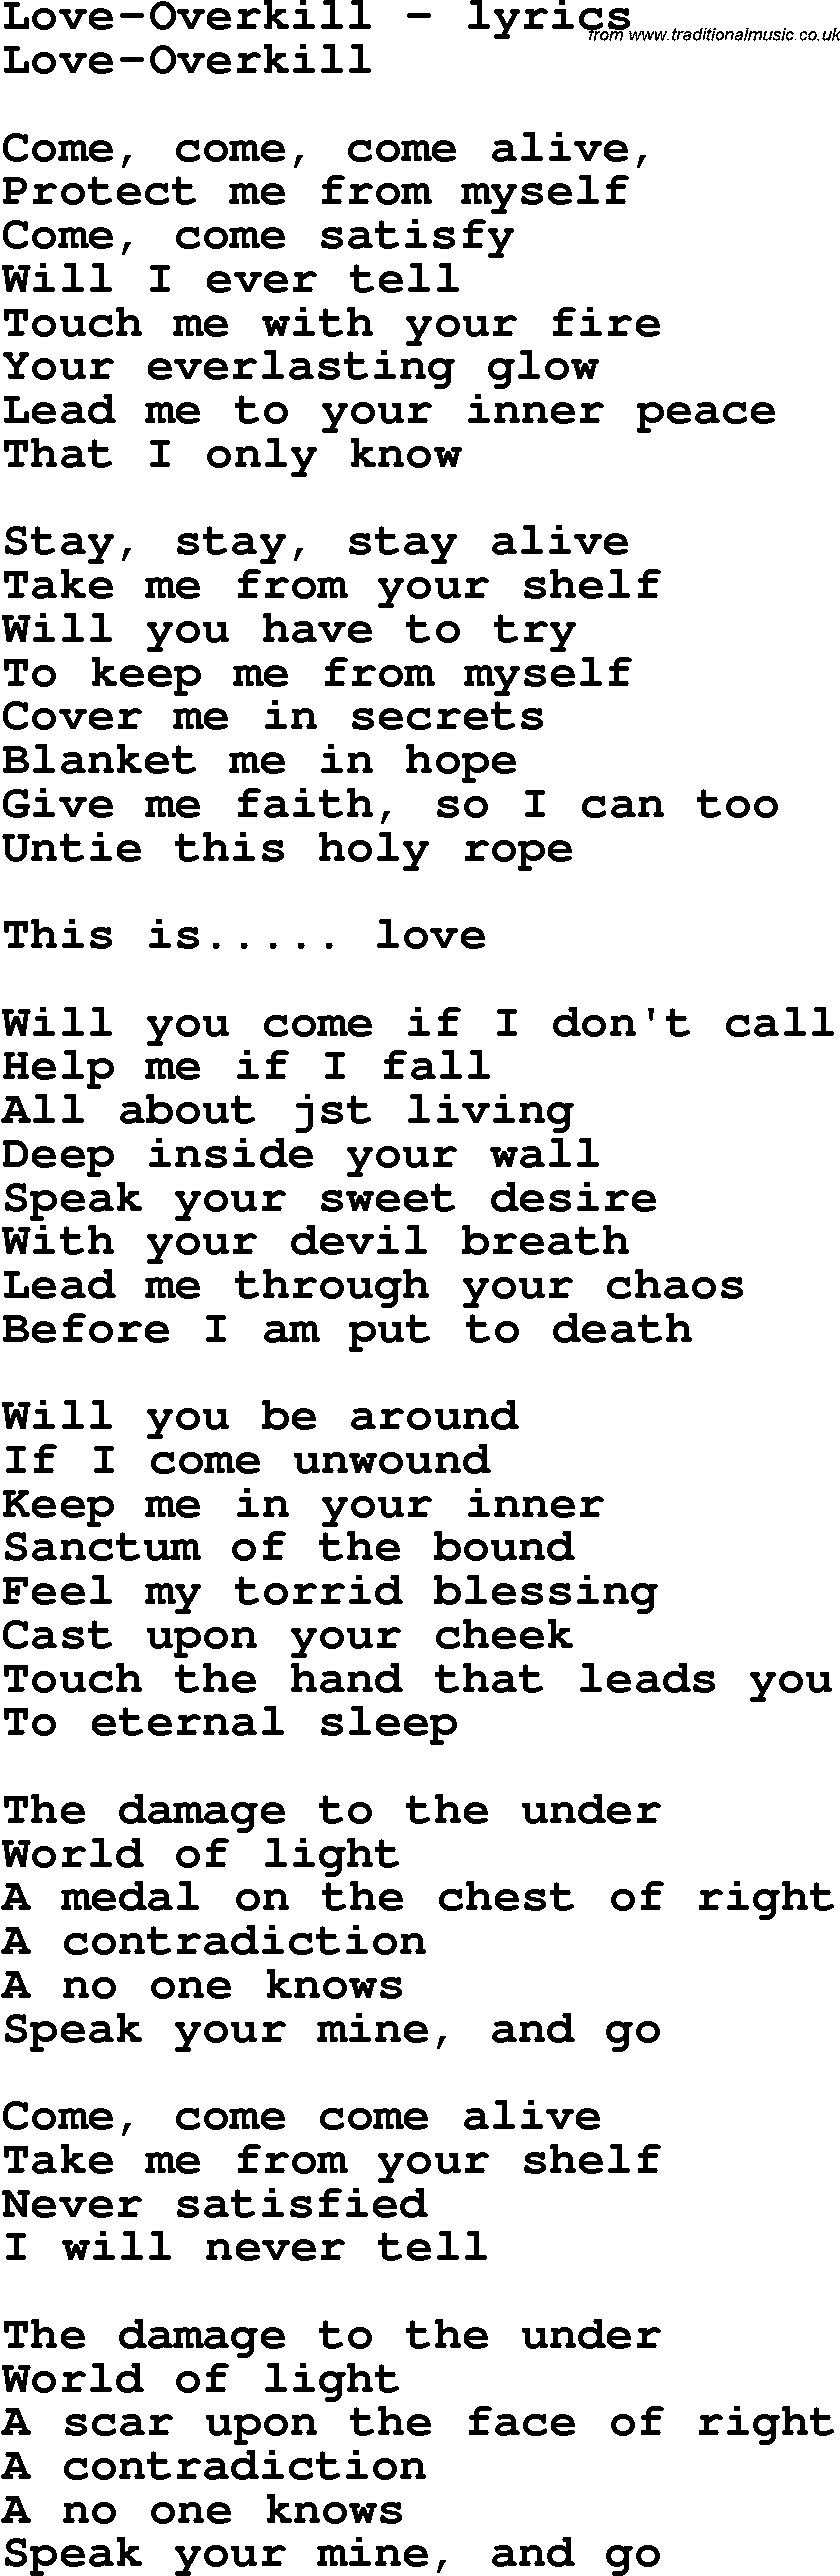 Love Song Lyrics for: Love-Overkill